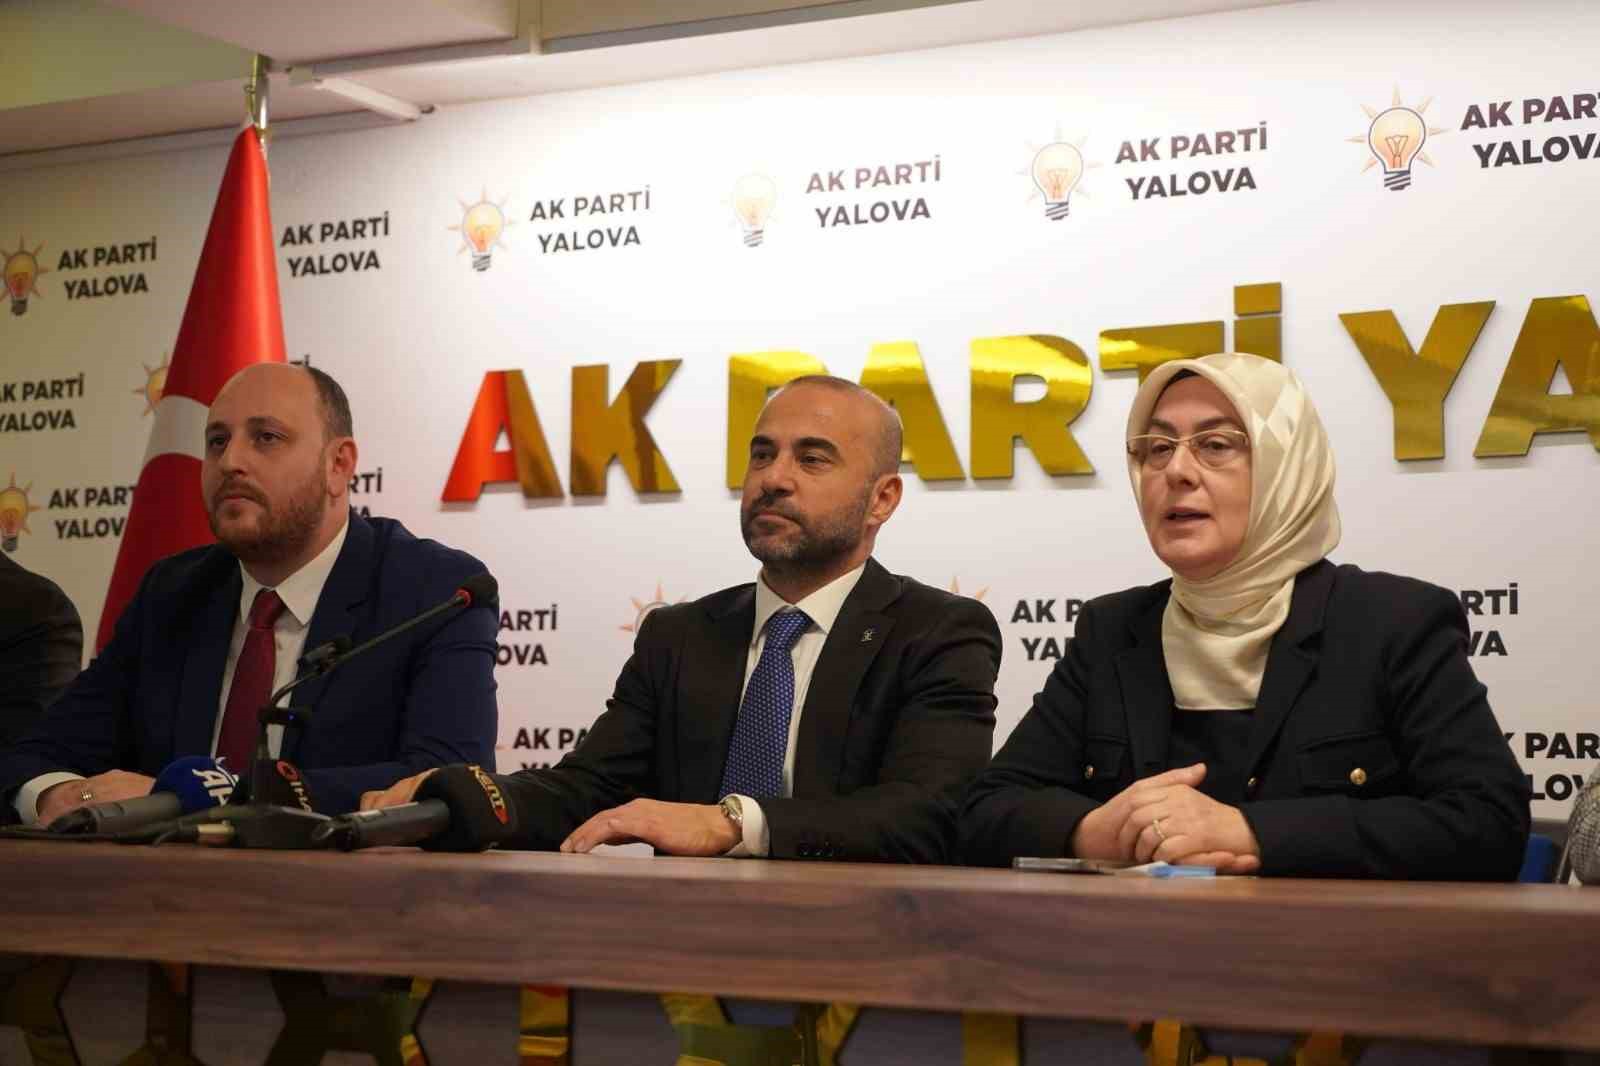 AK Parti Yalova İl Başkanı Güçlü, “Gerekli önlemleri alacak, öz eleştirilerimizi çekinmeden yapacağız”
